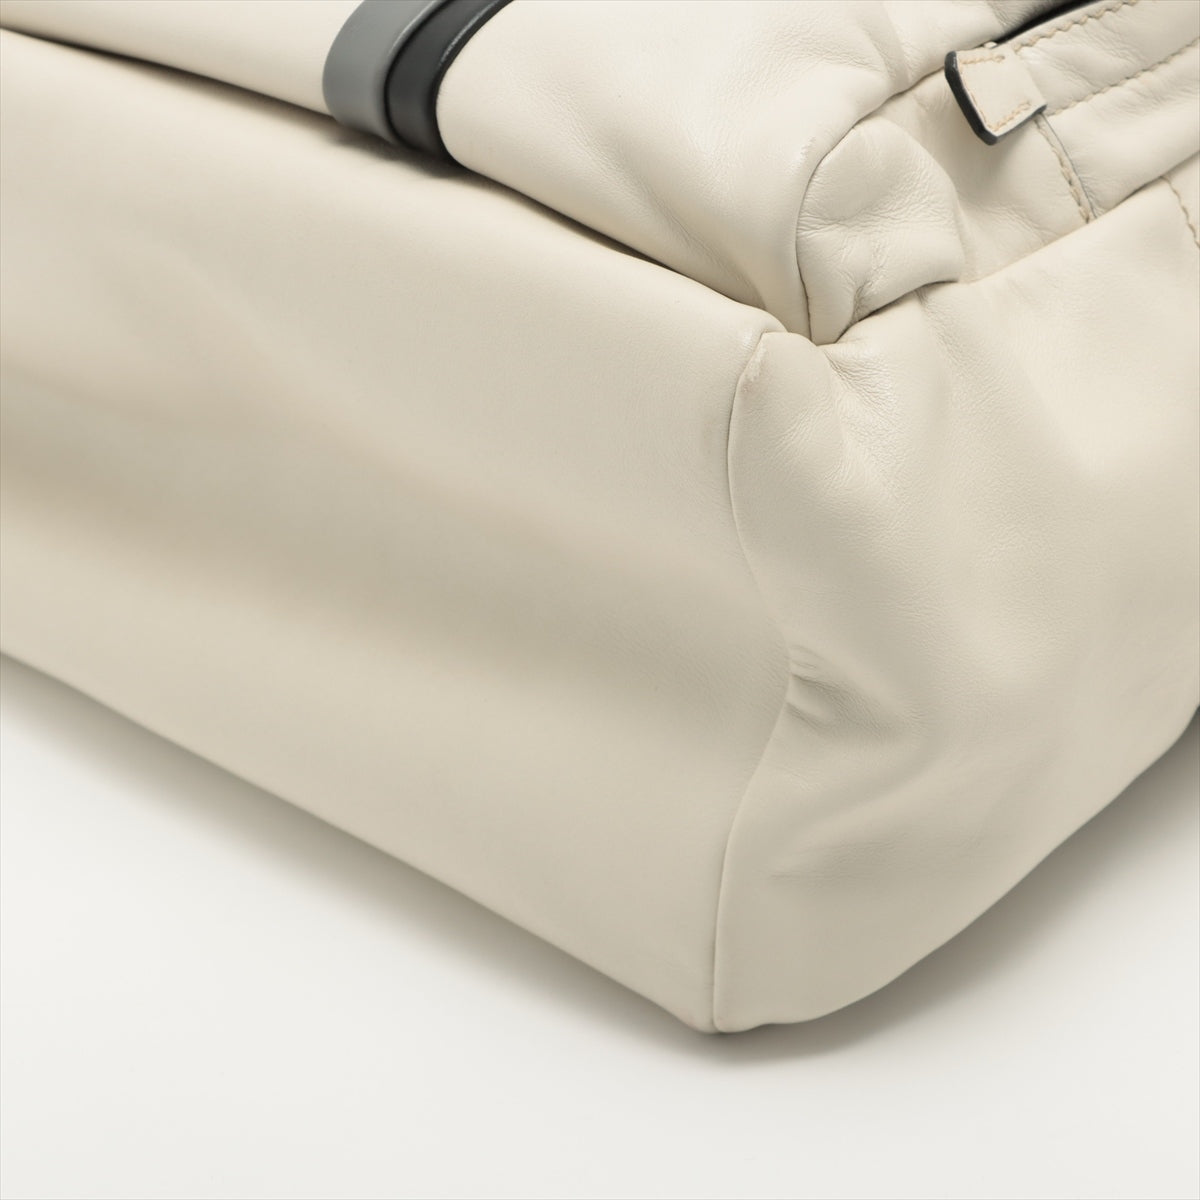 Prada Leather Backpack White 2VZ066